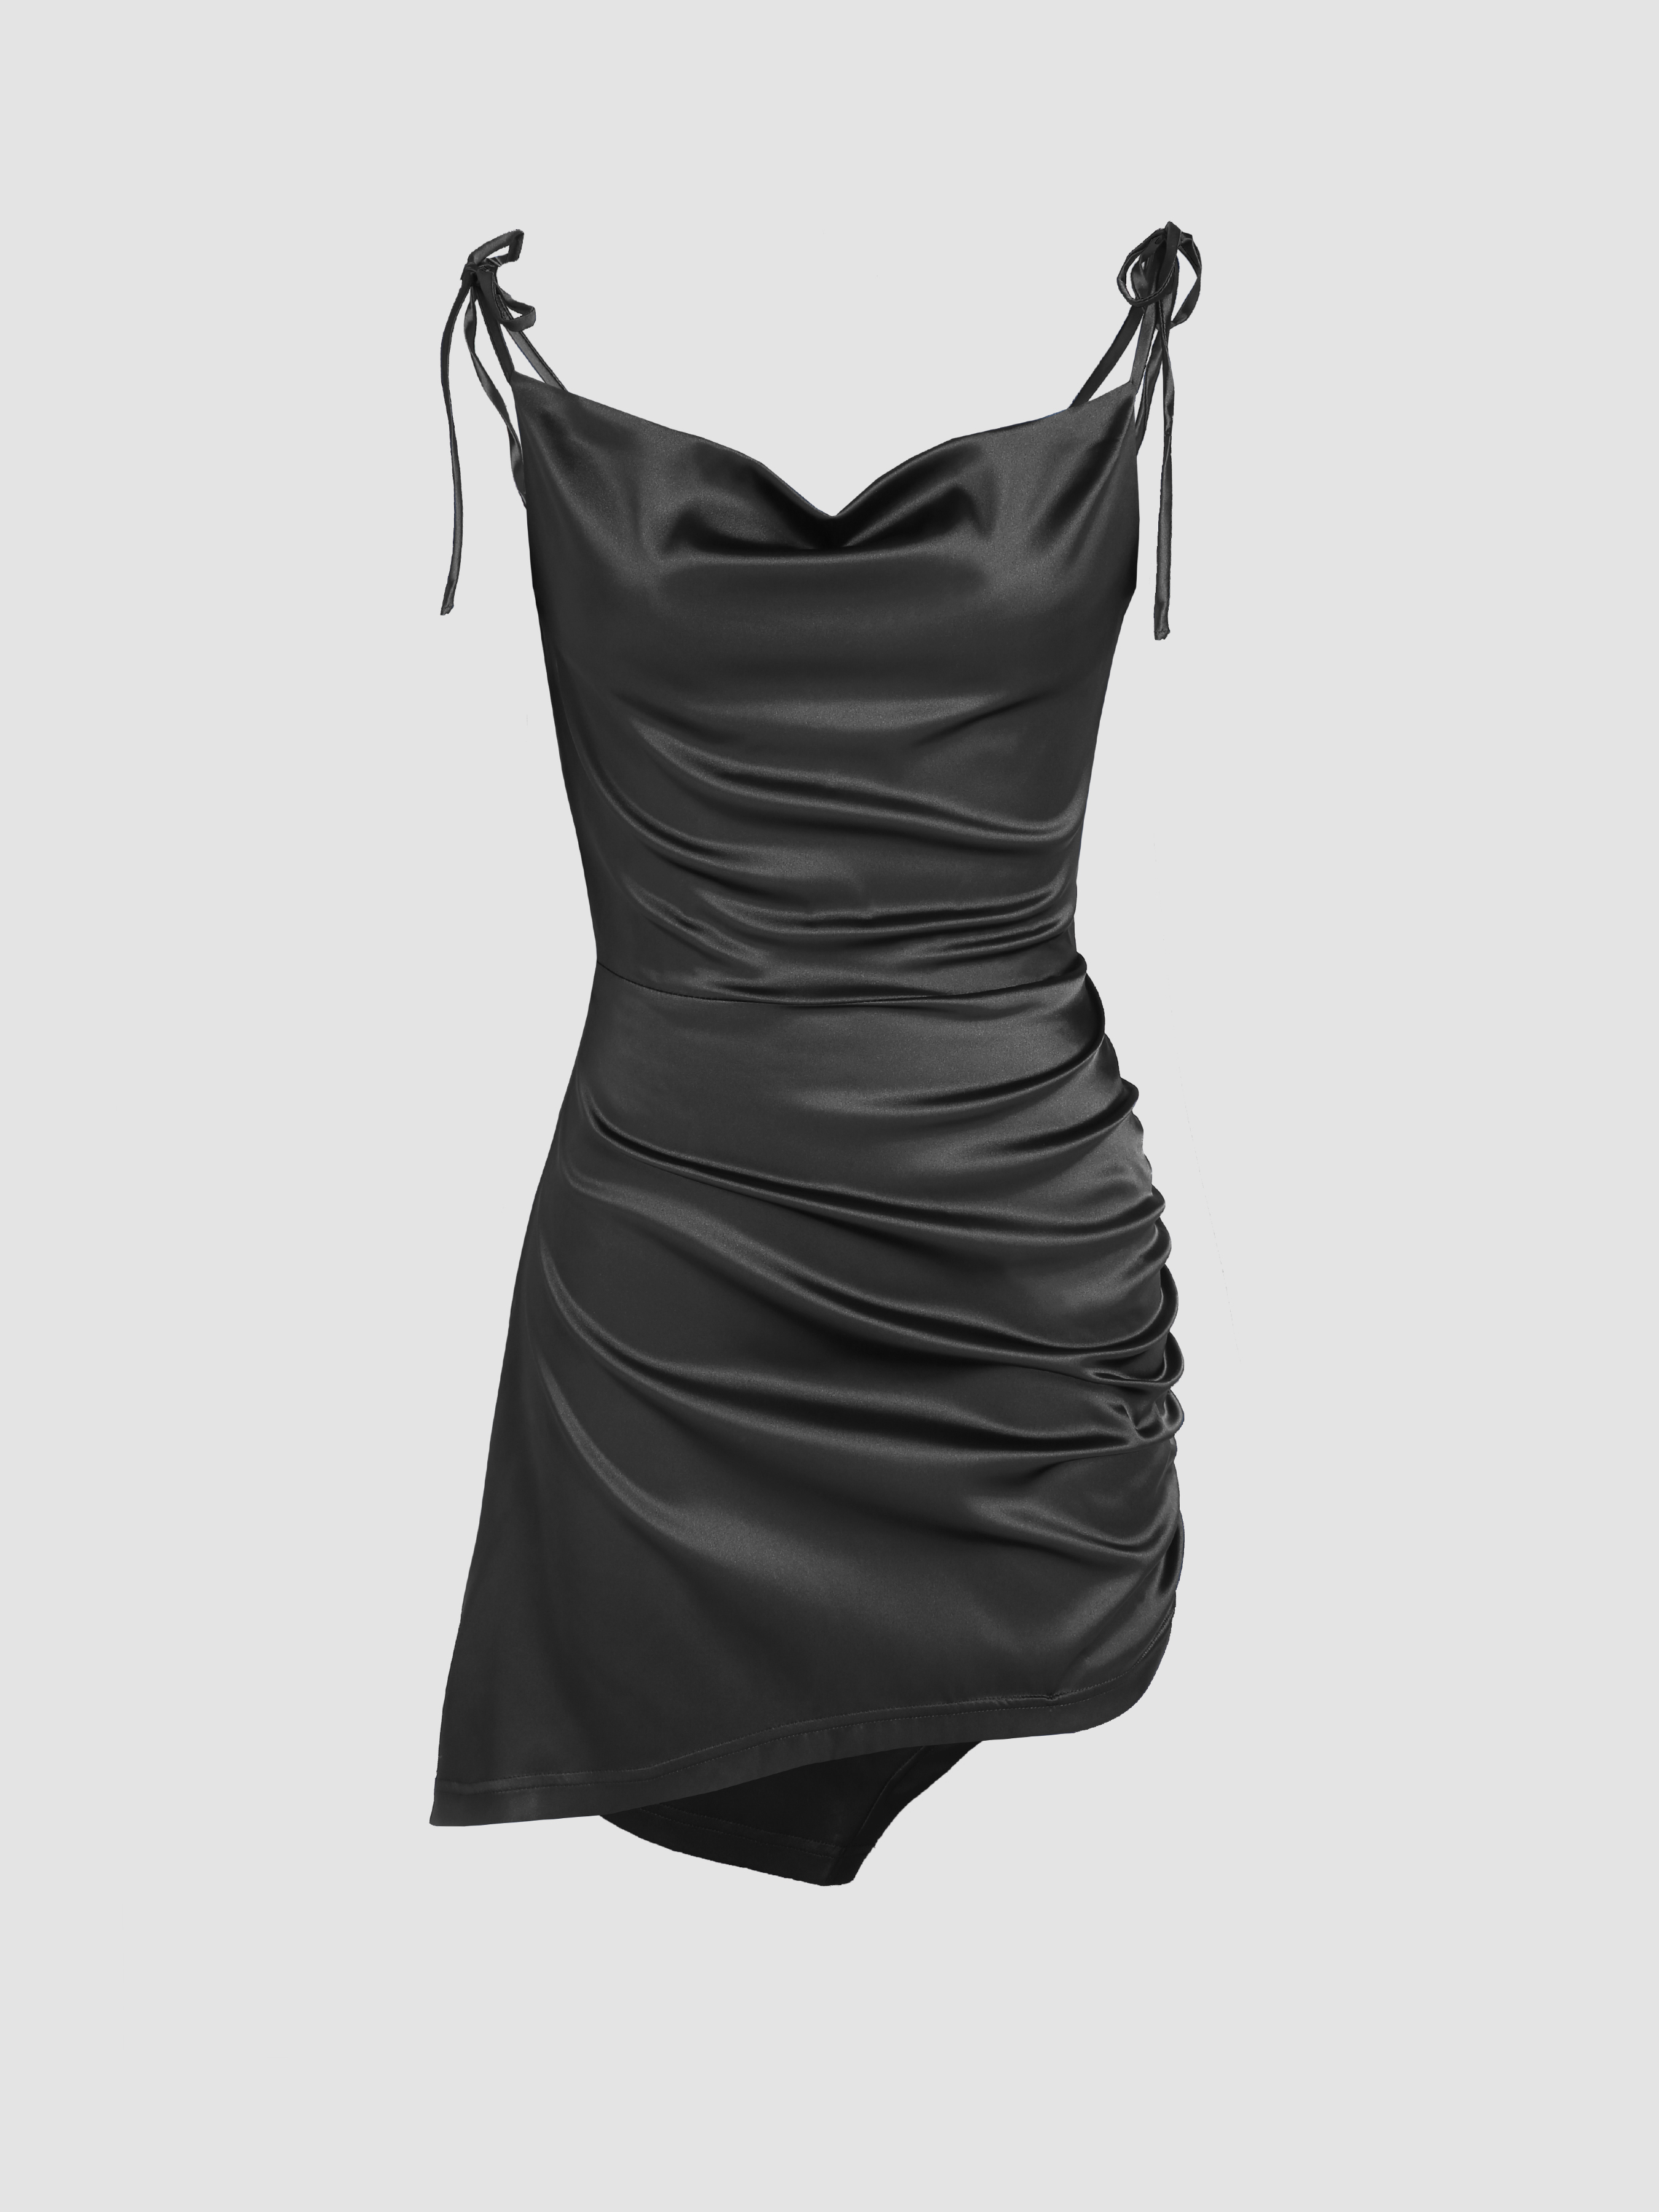 TOPSHOP BLACK SATIN SLIP MINI DRESS, Black Women's Short Dress